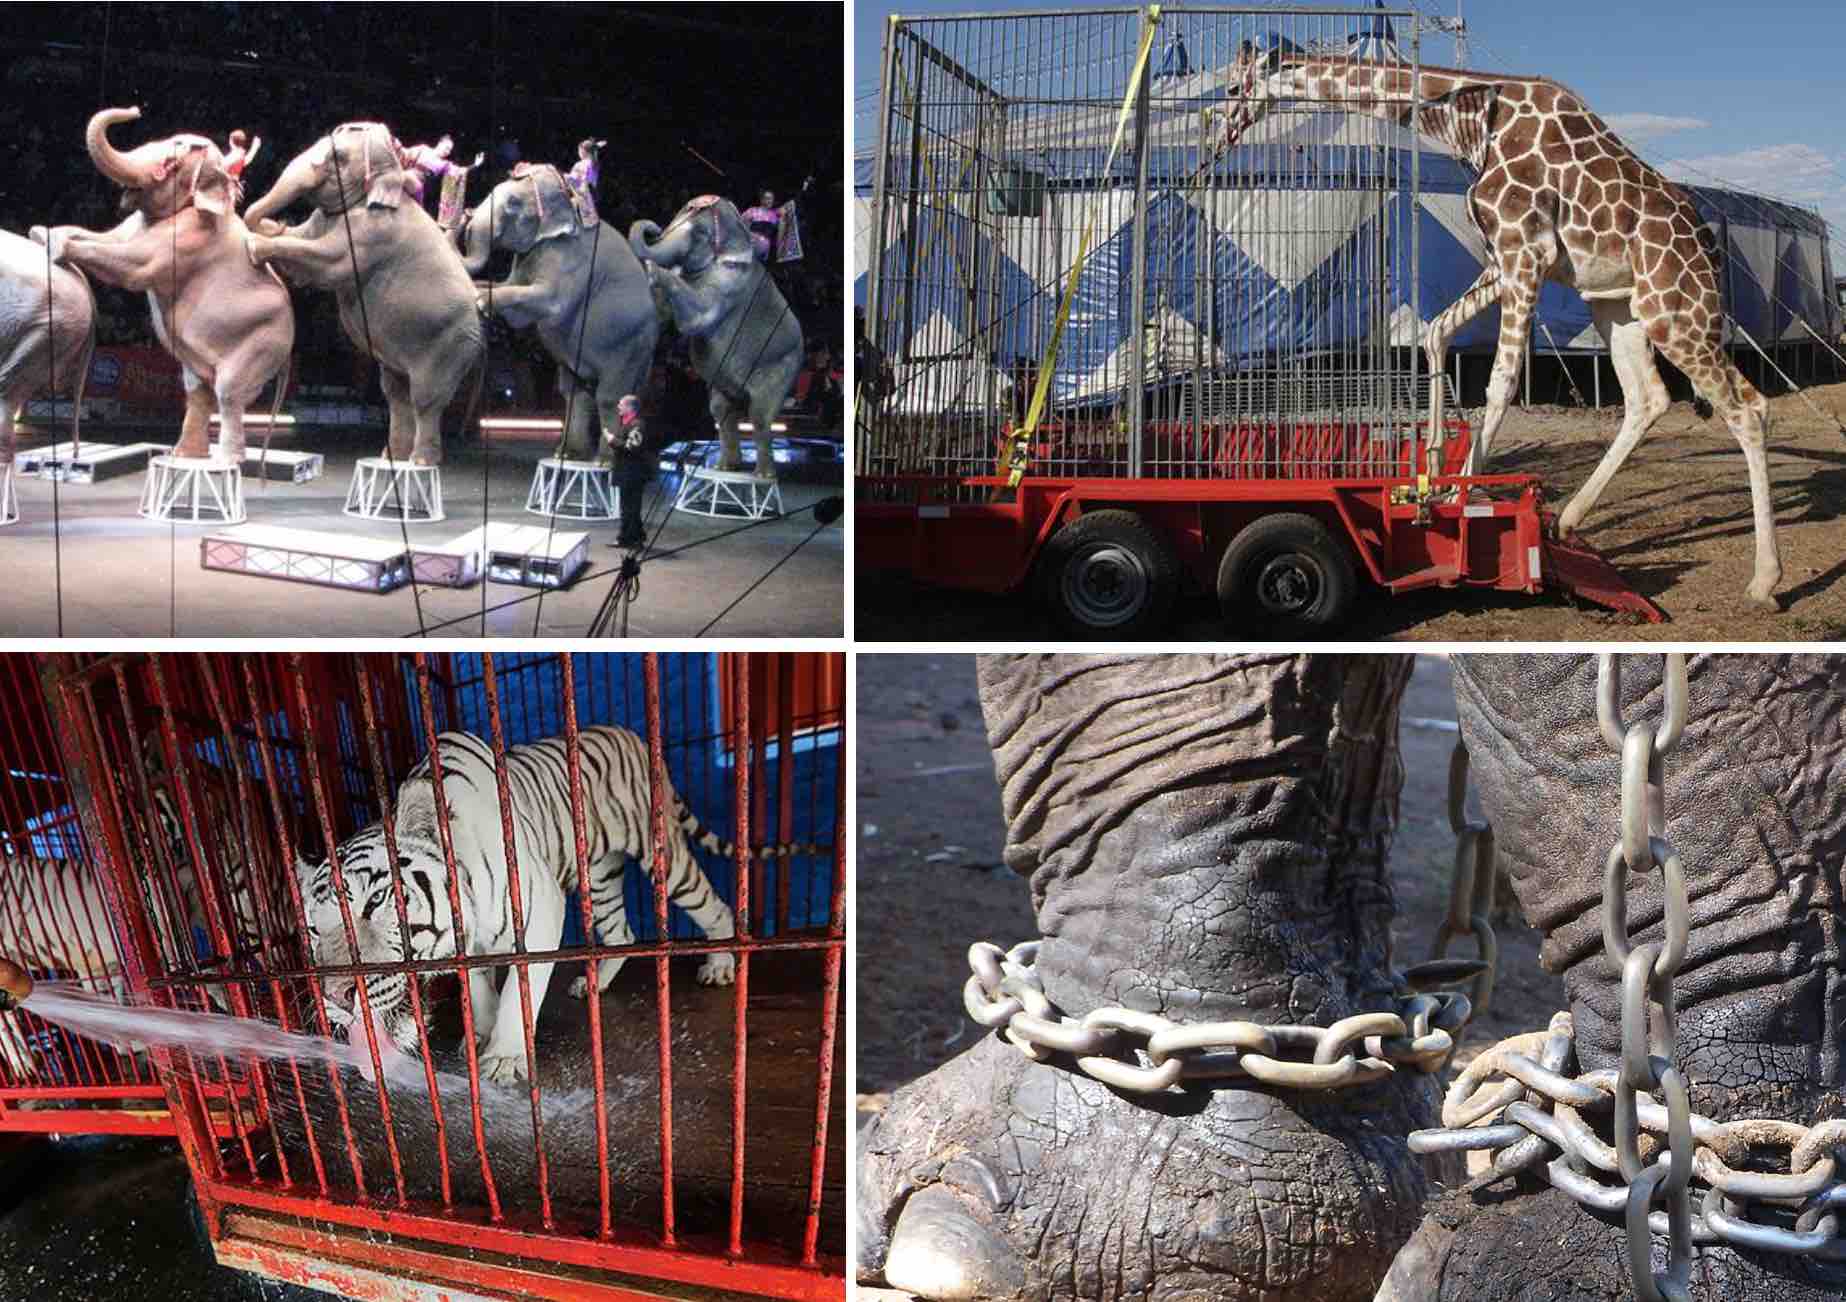 Circus-animal-abuse.jpg